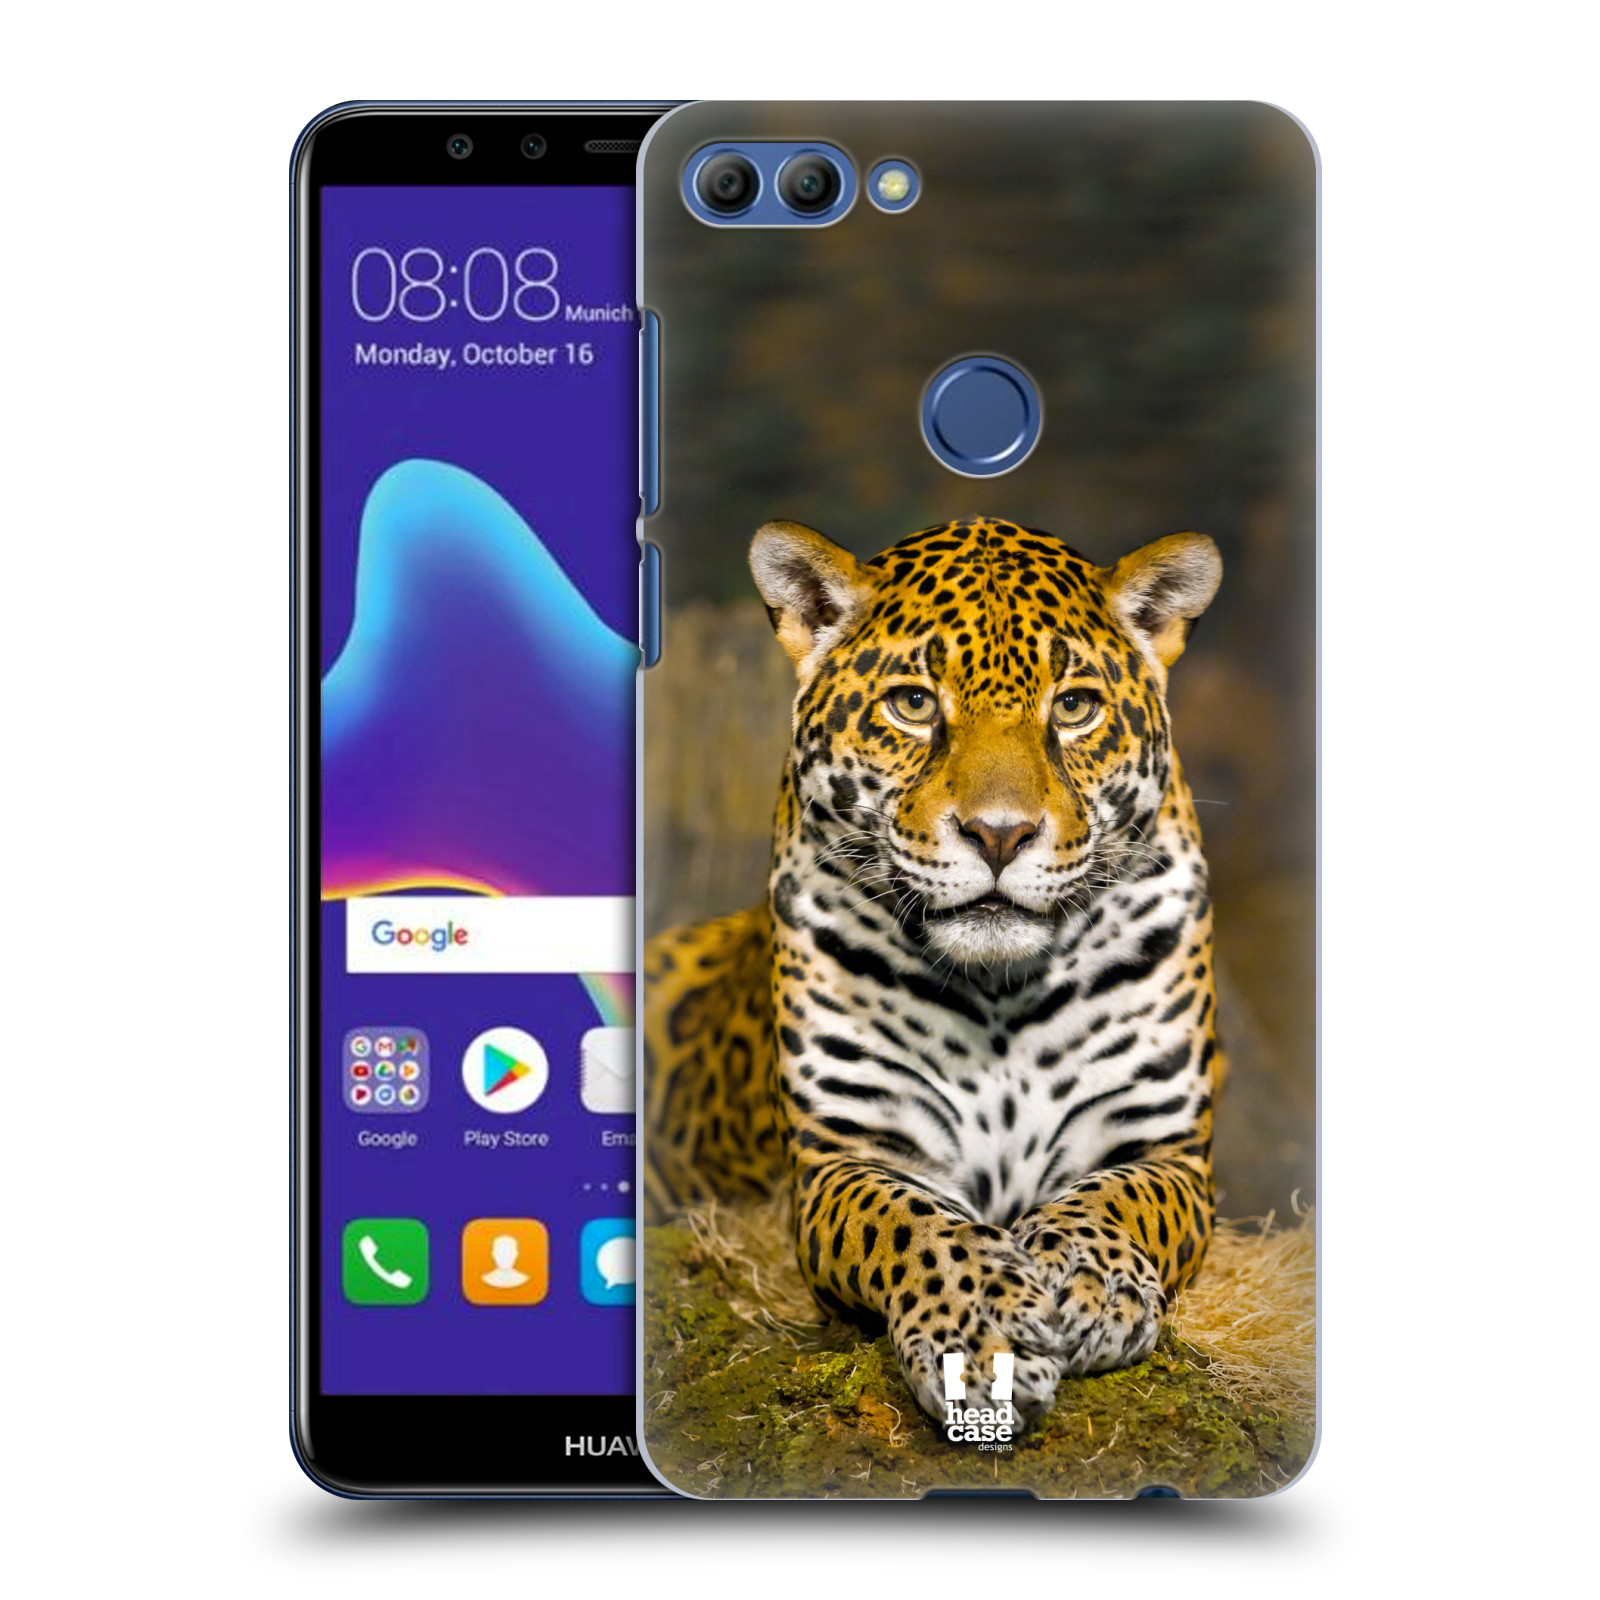 HEAD CASE plastový obal na mobil Huawei Y9 2018 vzor slavná zvířata foto jaguár